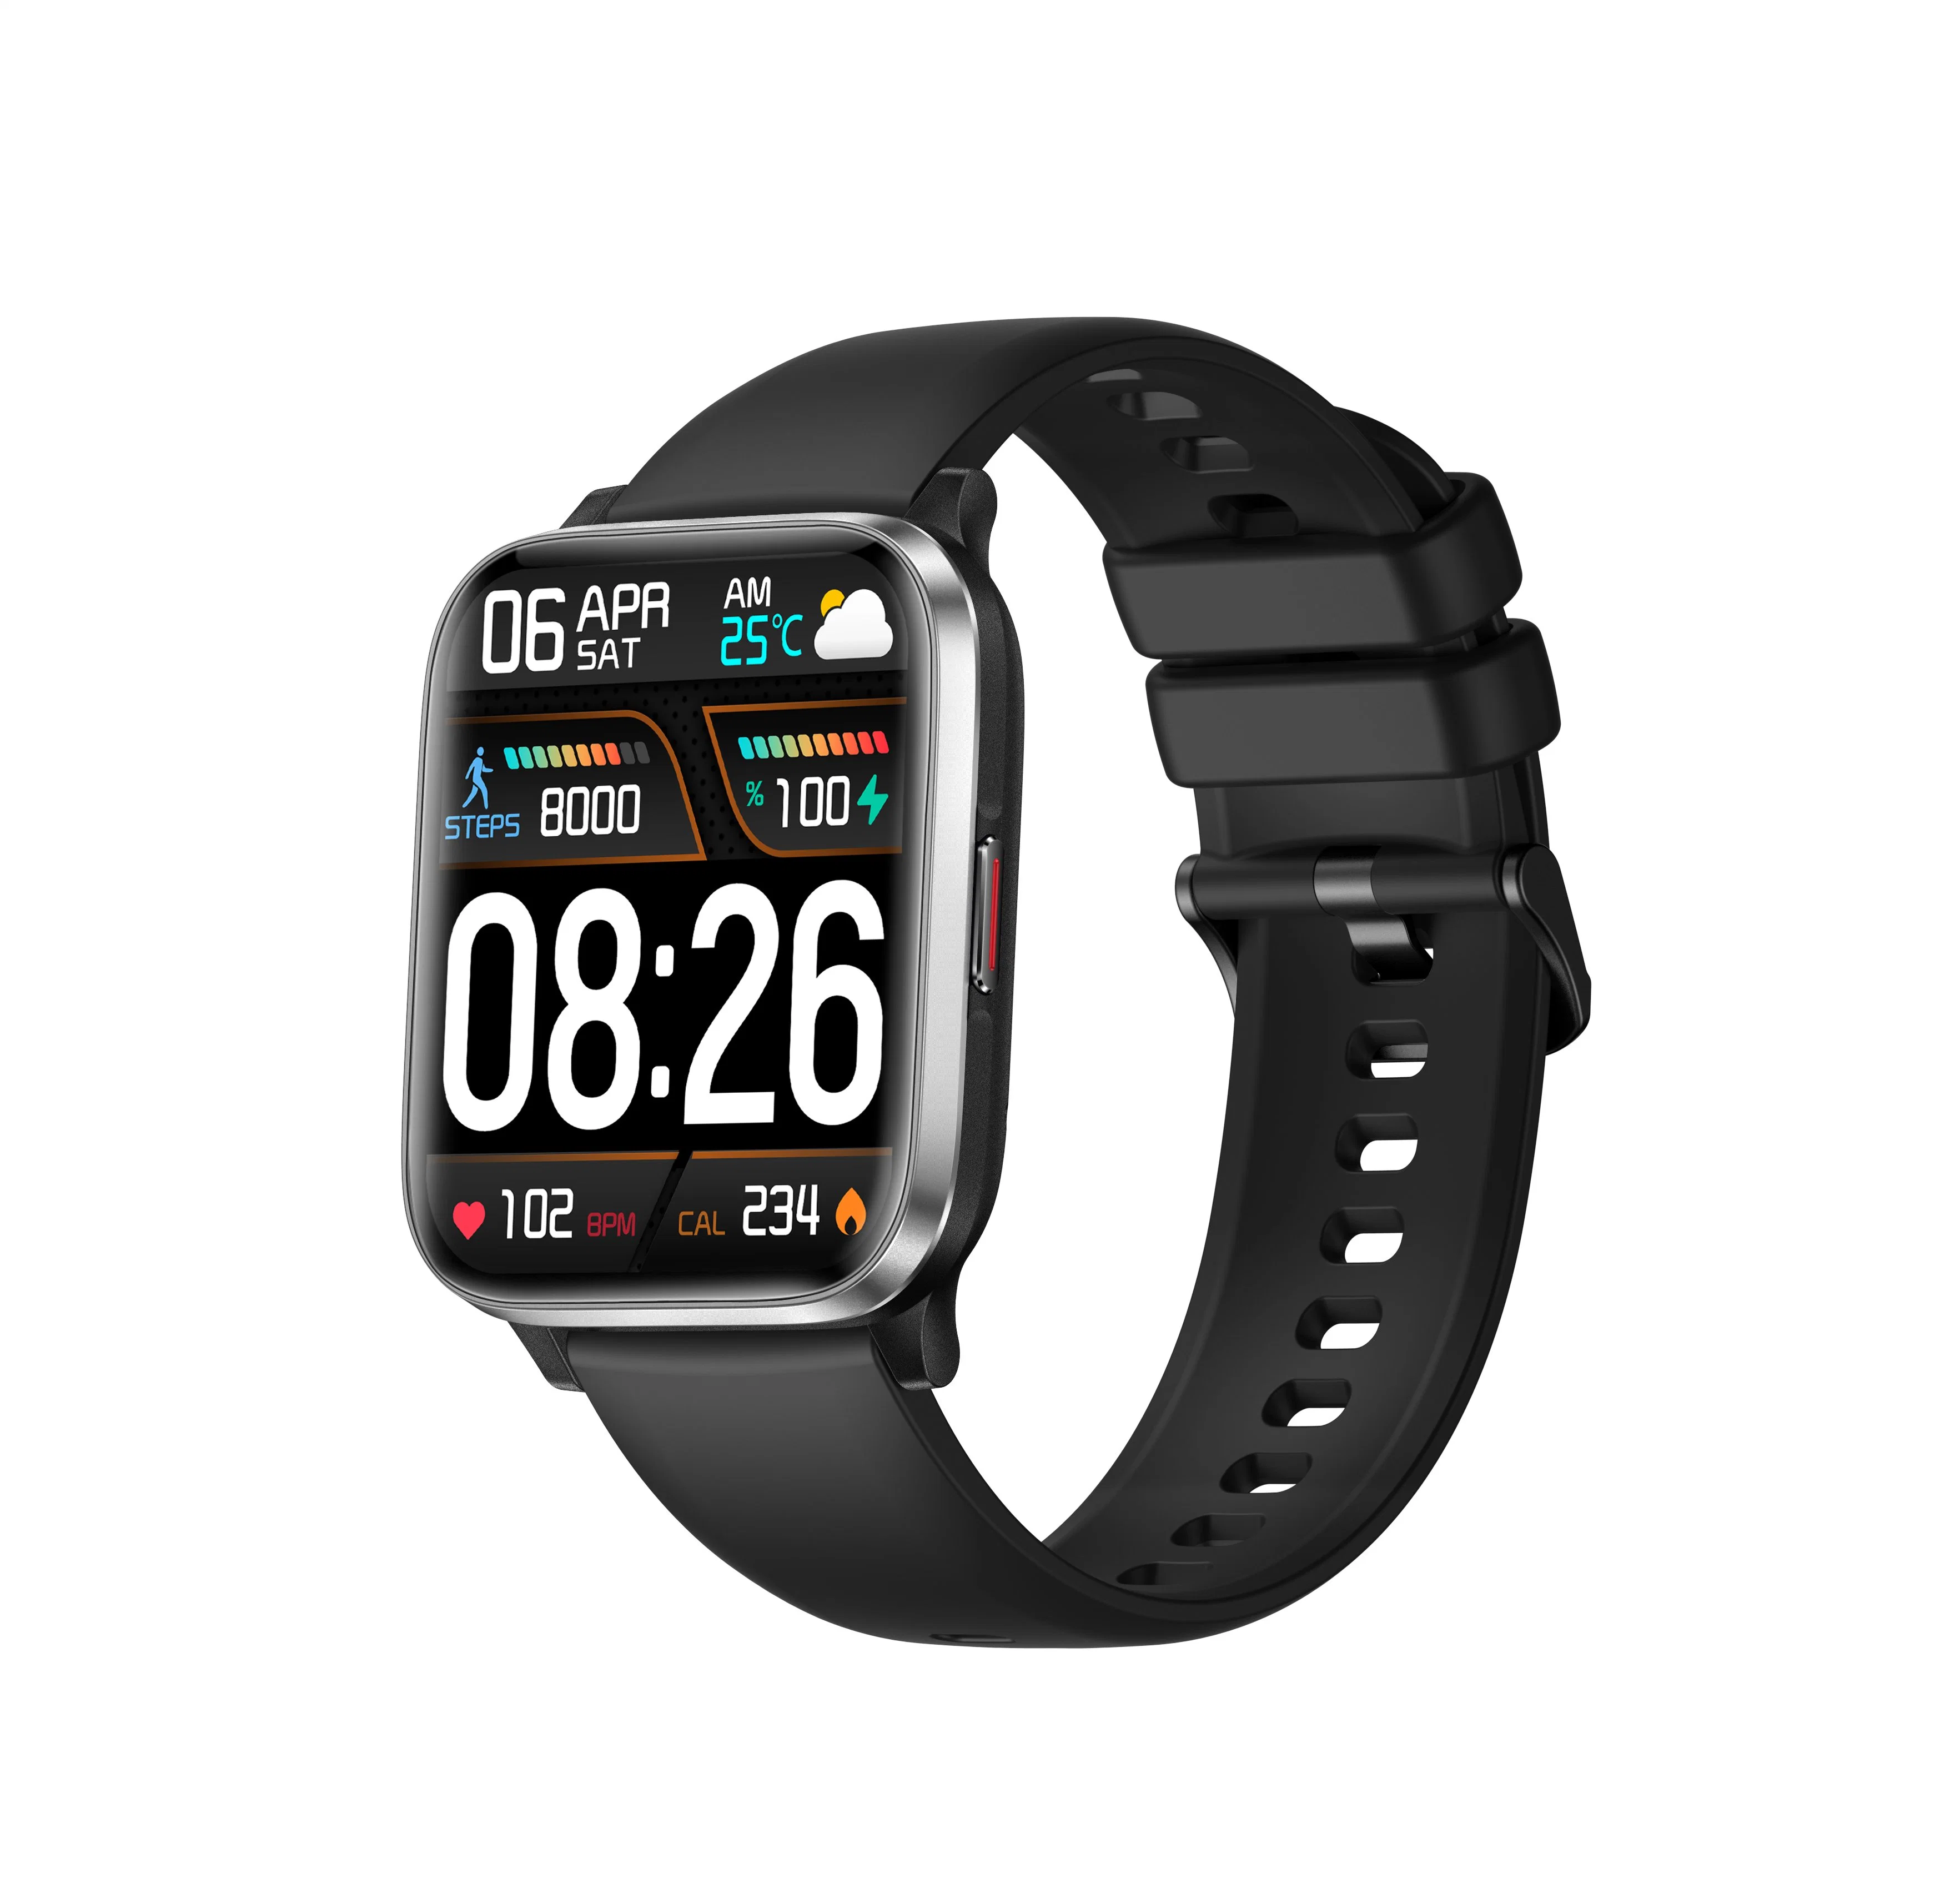 Watch Smart Watch Gift Swiss Promotion Watch Digital Automatic Mechanial Watch Sports Fashion China Watch